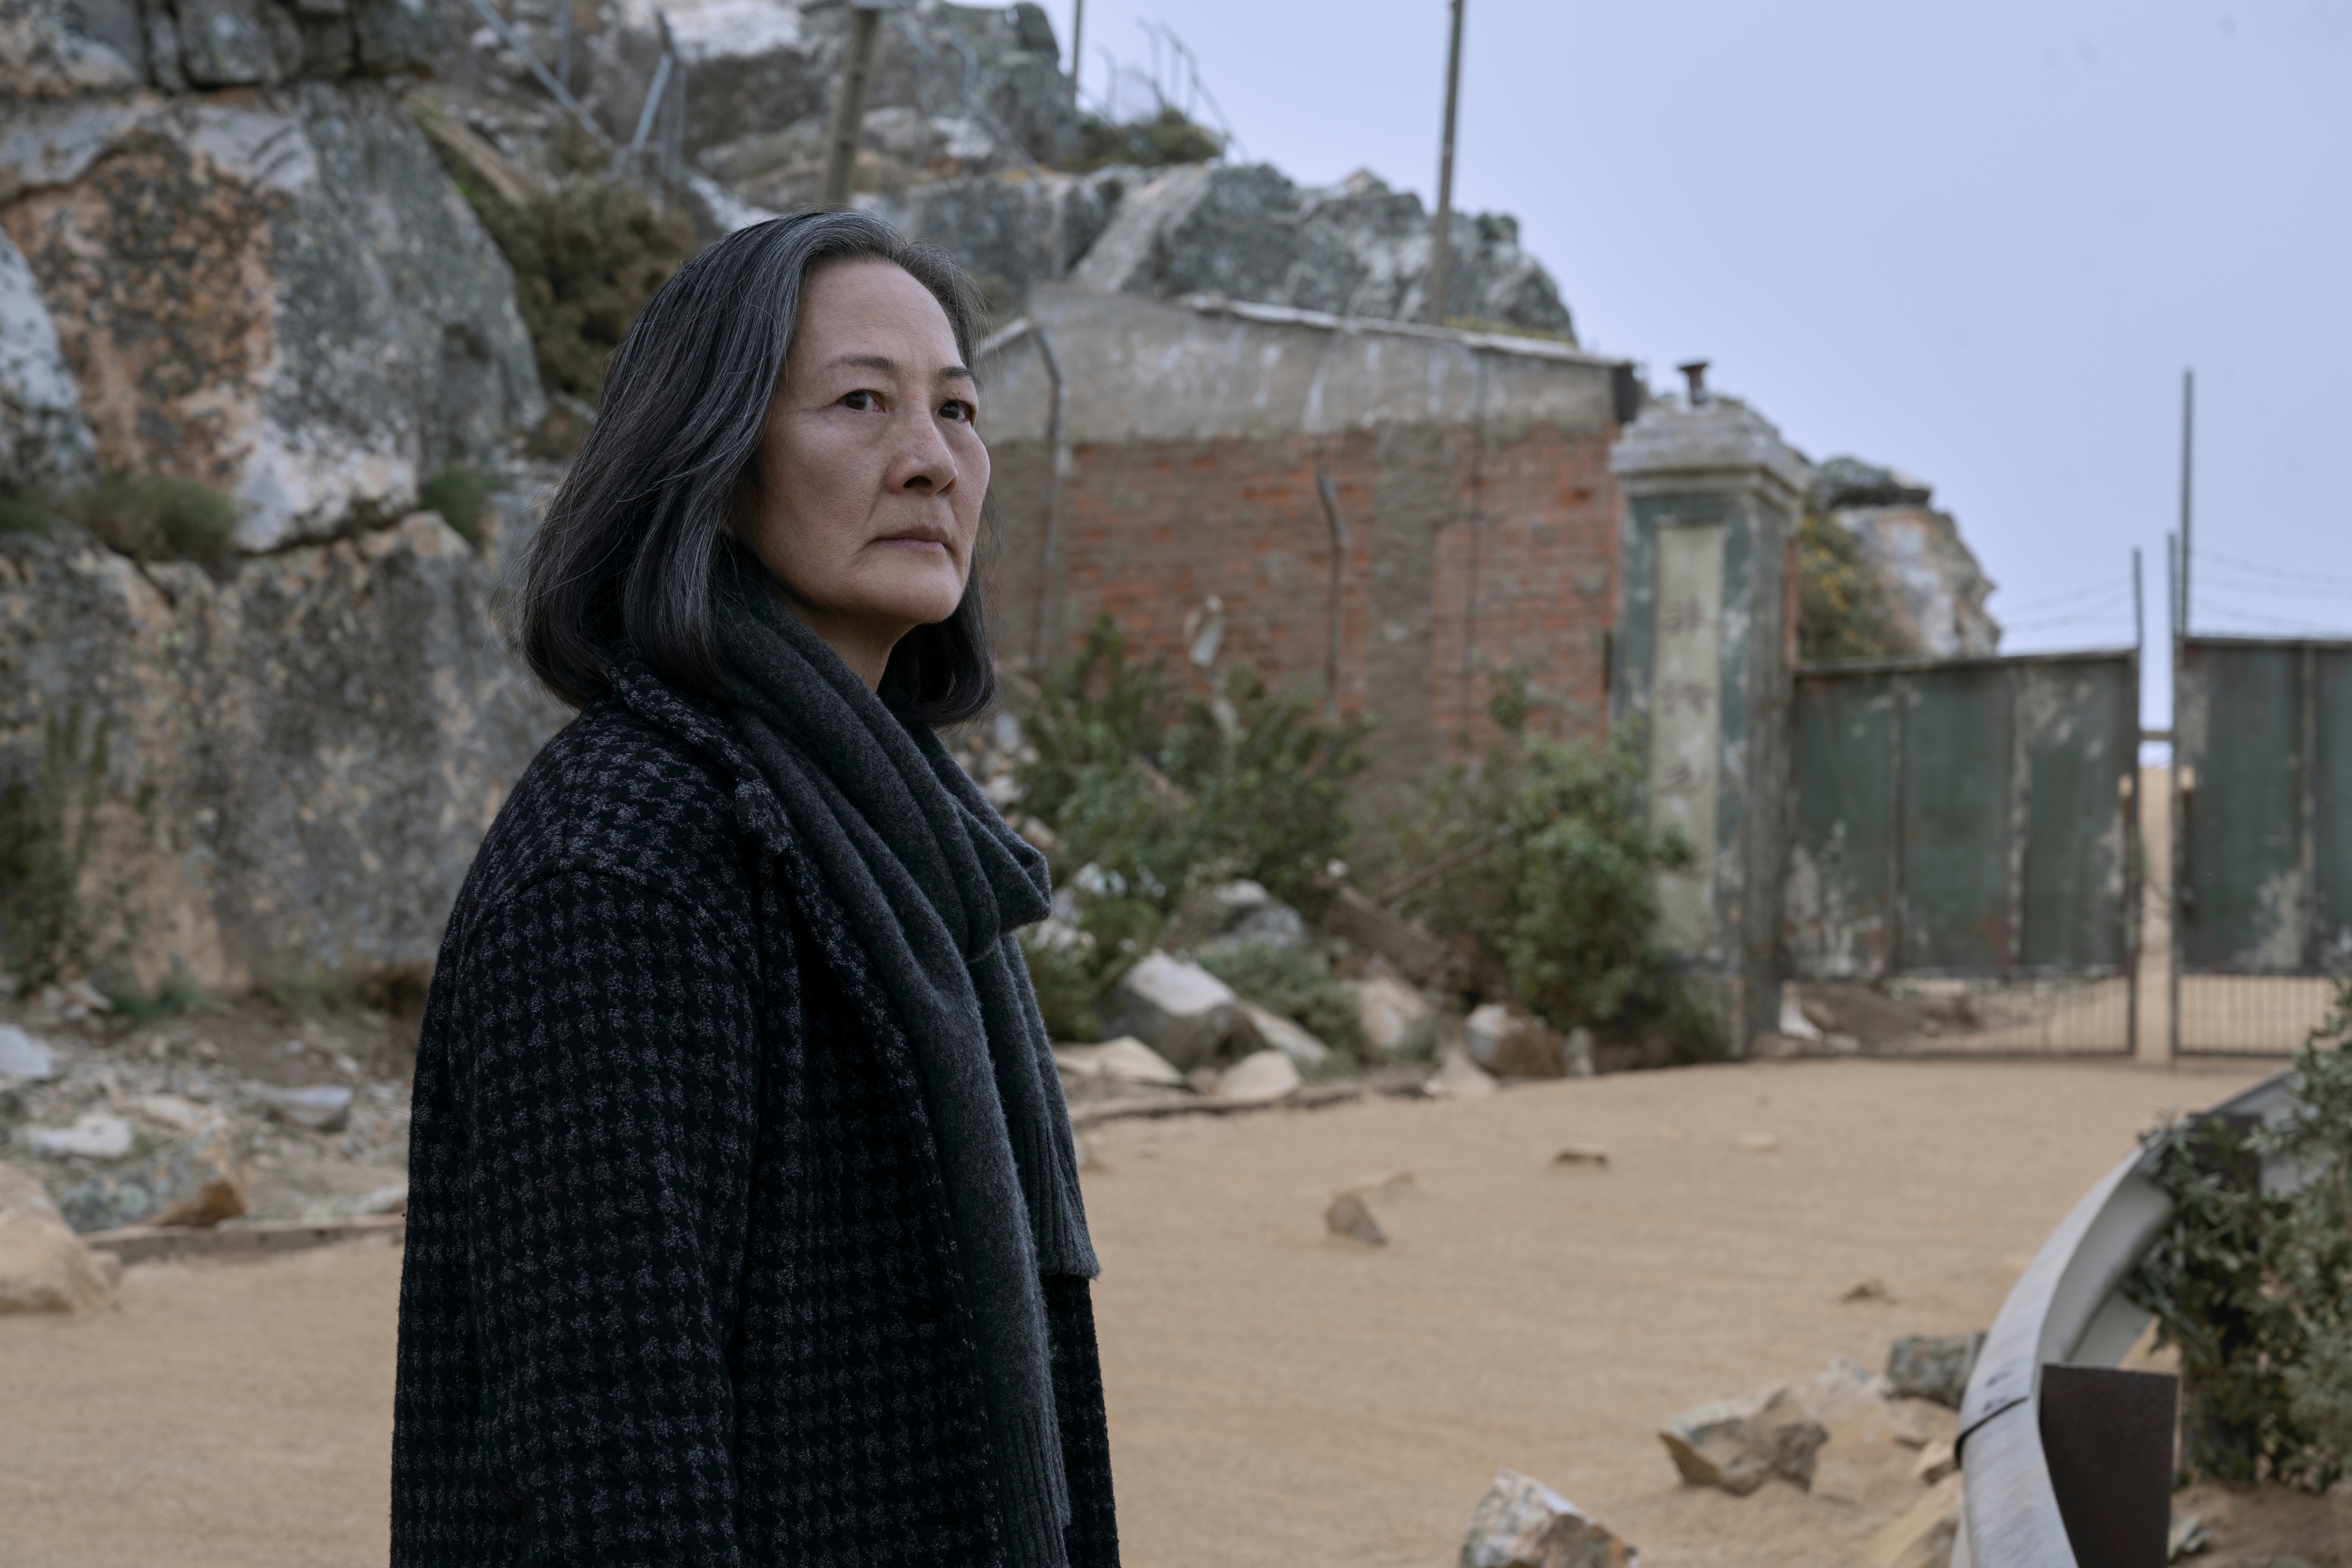 넷플릭스 시리즈 ‘삼체’에서 노년의 예원제(로잘린드 차오)가 드라마 속 중국 전파천문대 연구소 앞에 서 있다.  넷플릭스 제공